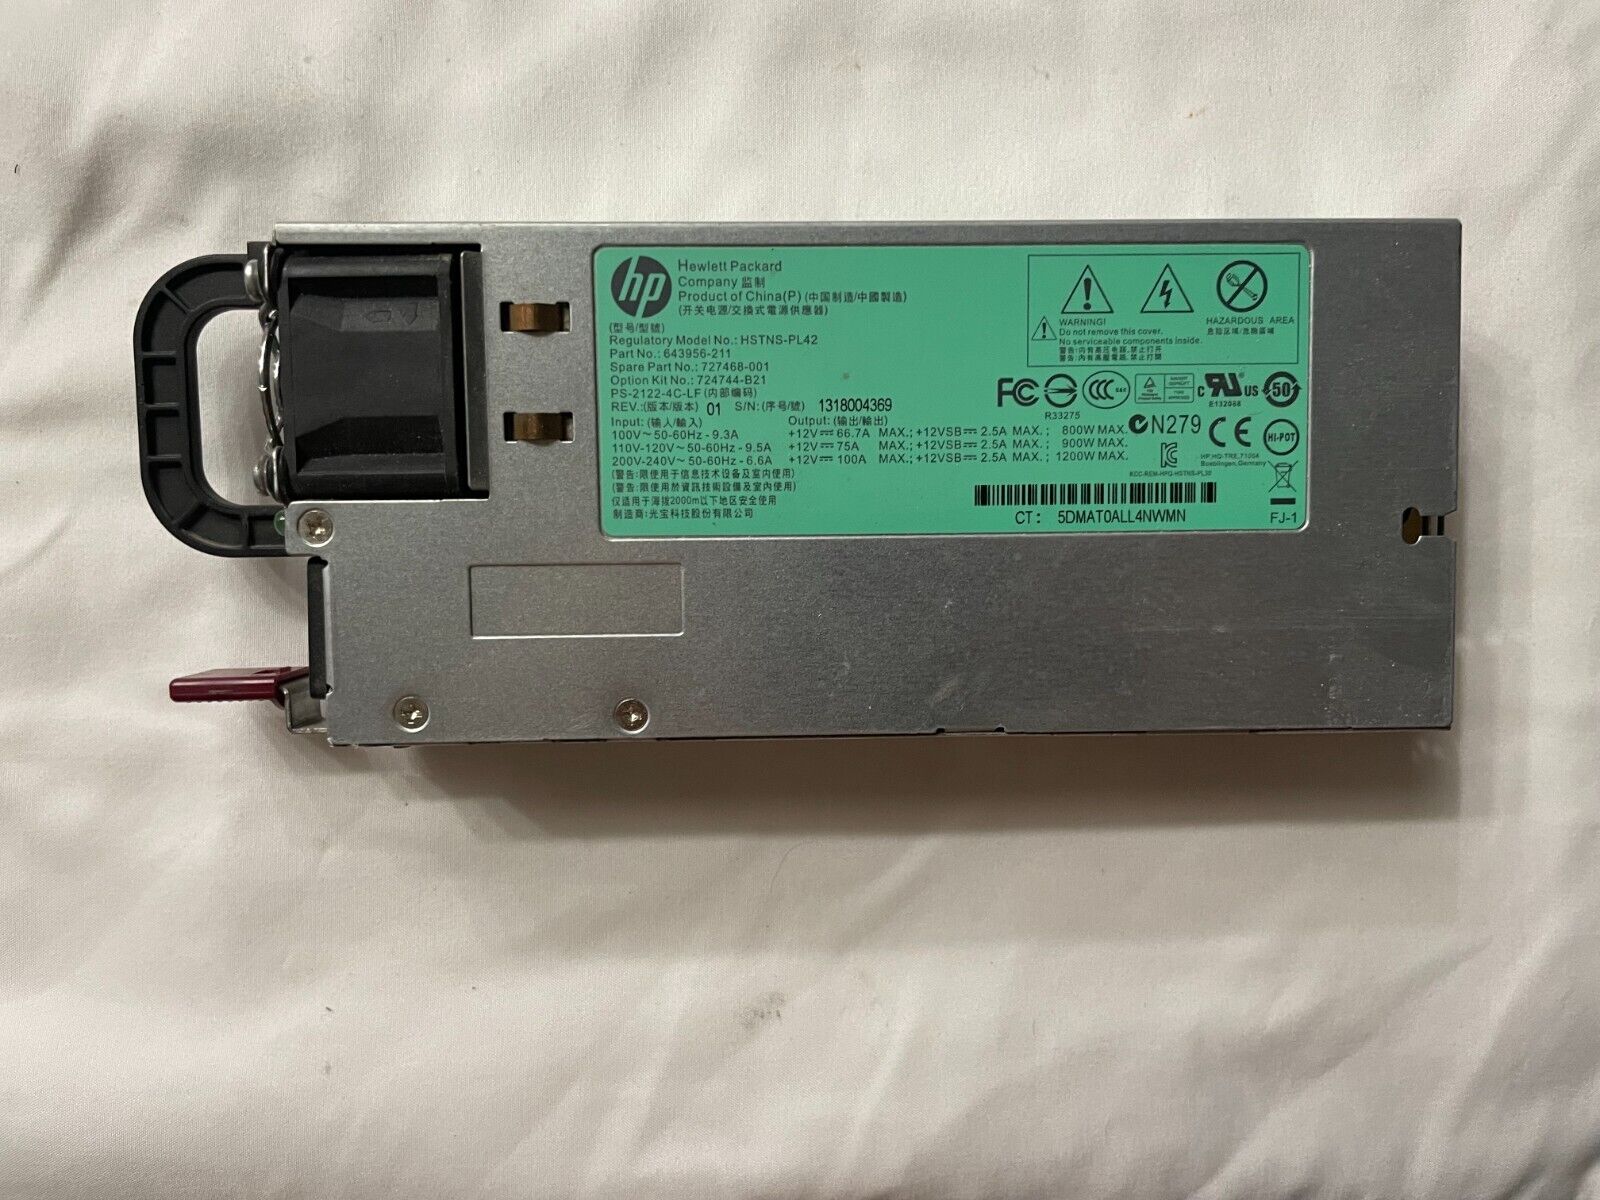 HP HSTNSPL11 Proliant 1200W Hot Plug Power Supply - 438203001